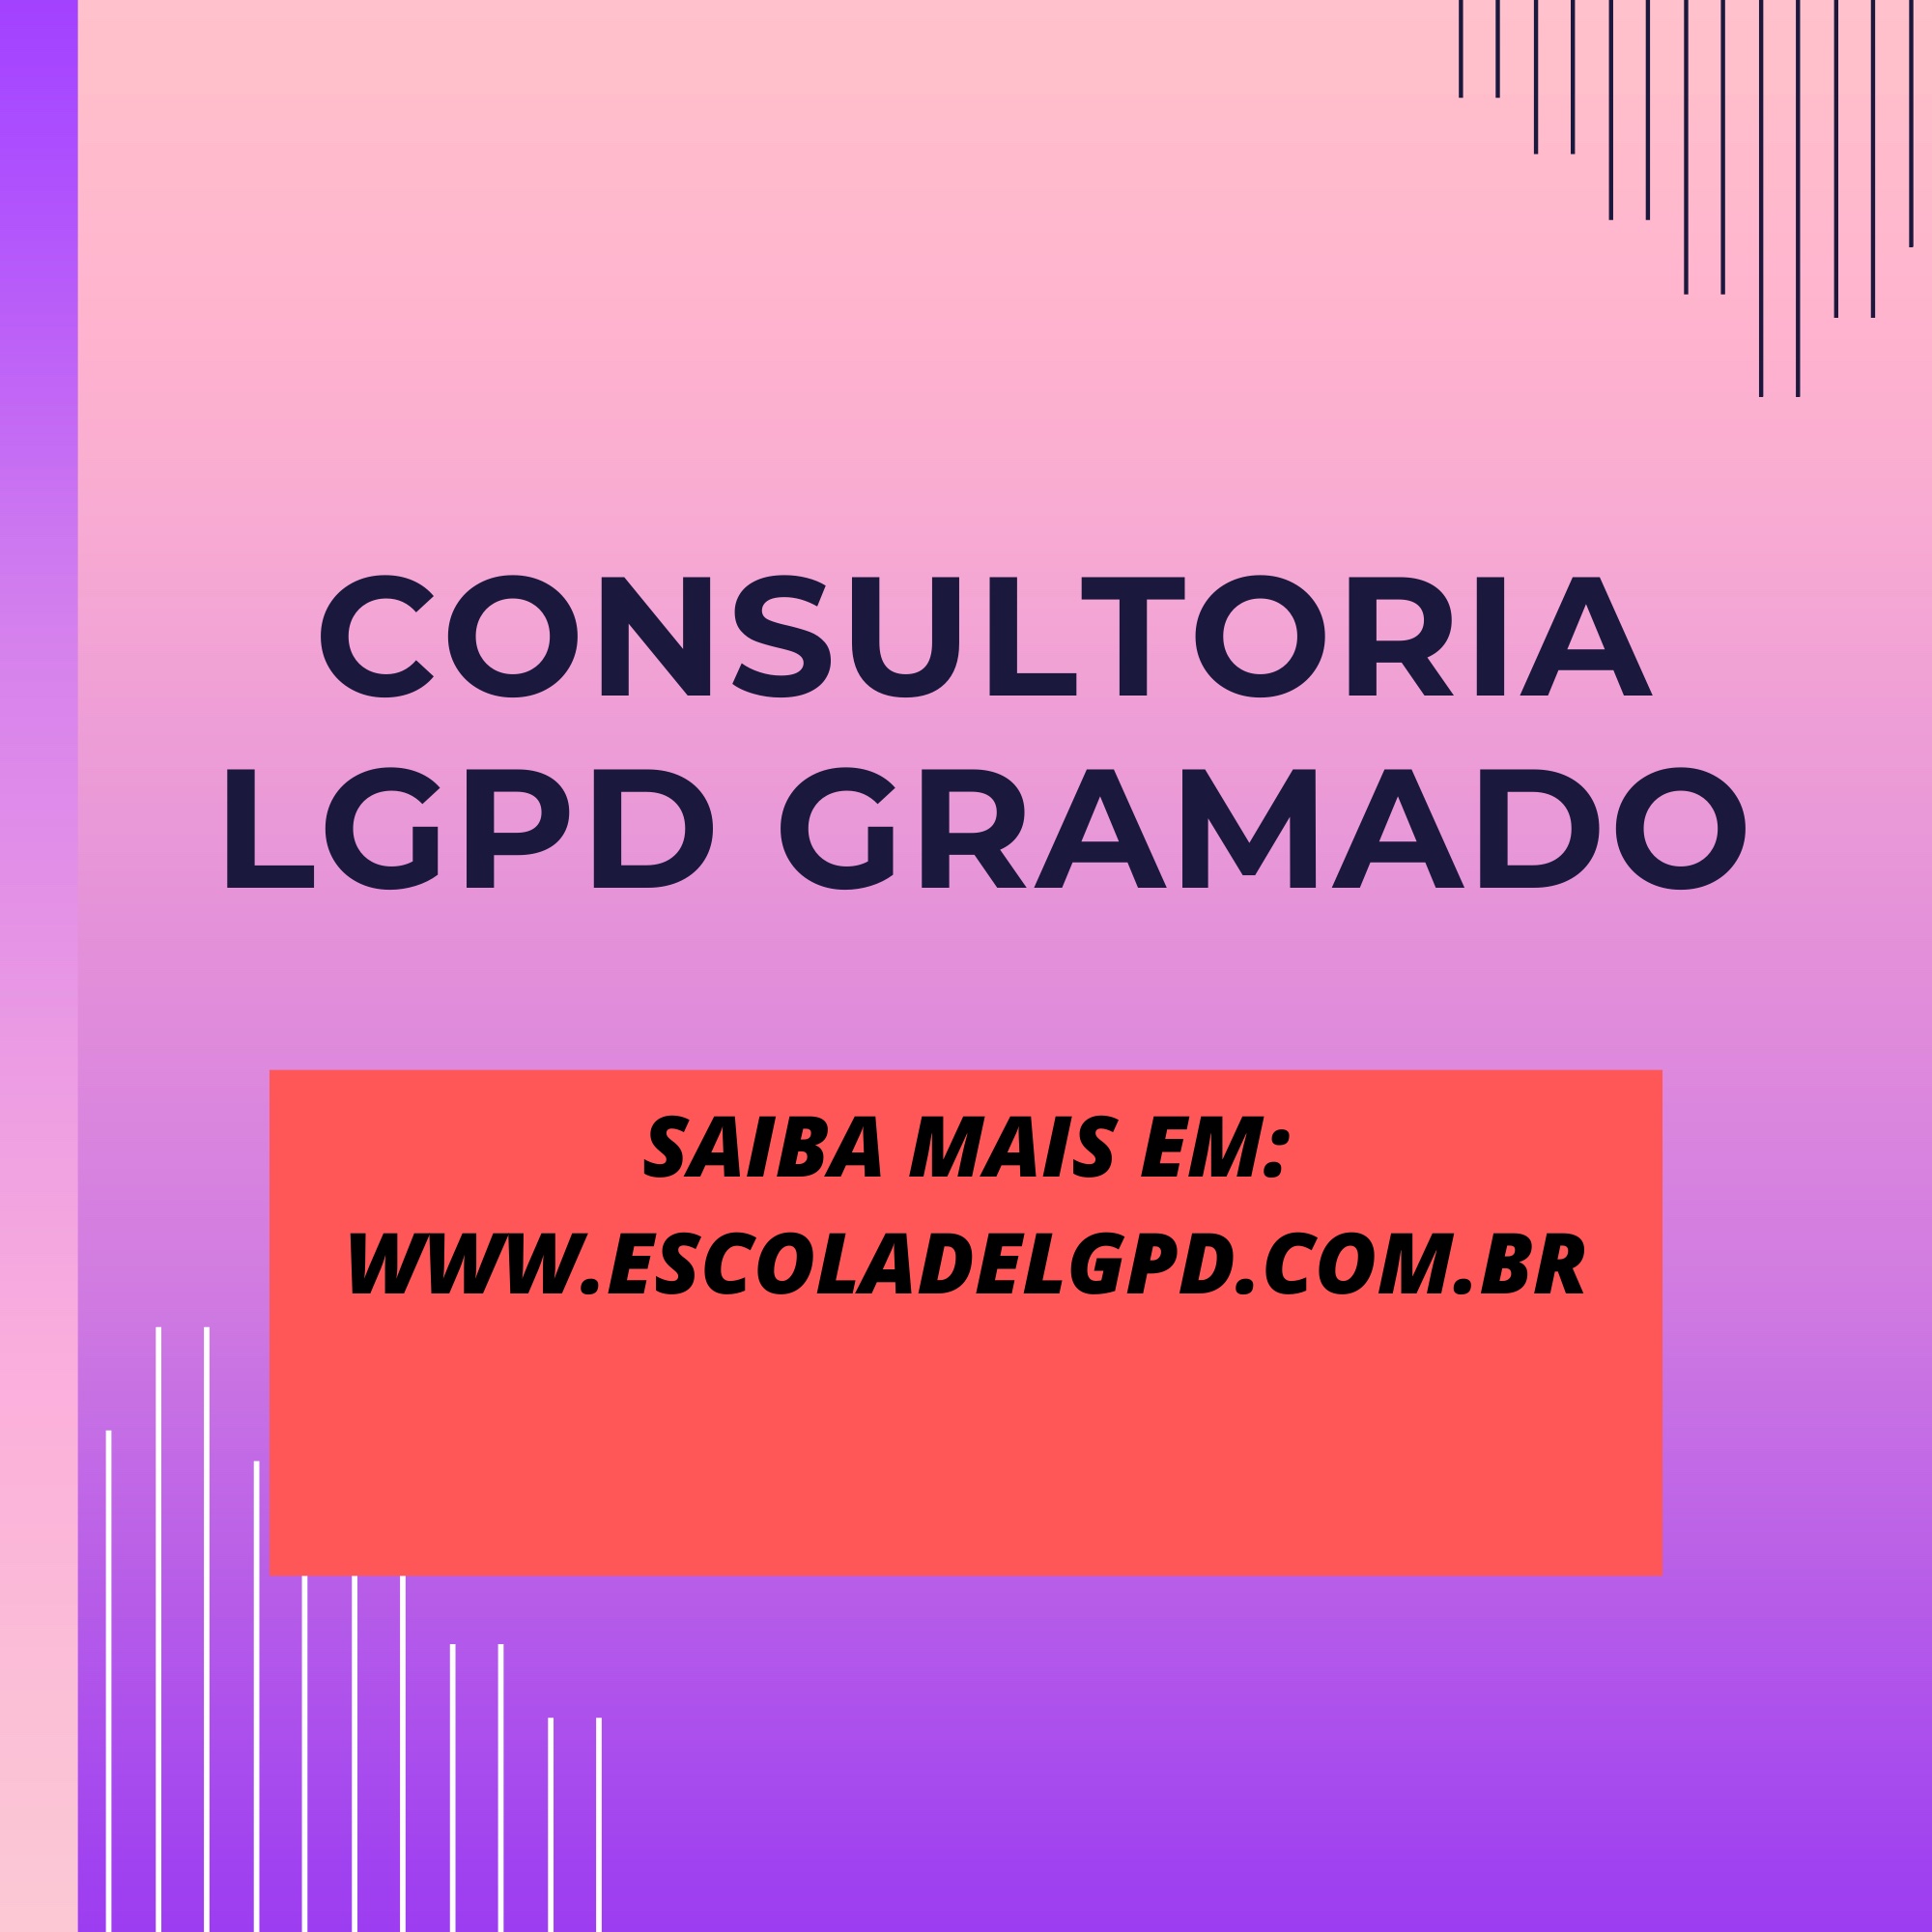 Consultoria LGPD Gramado